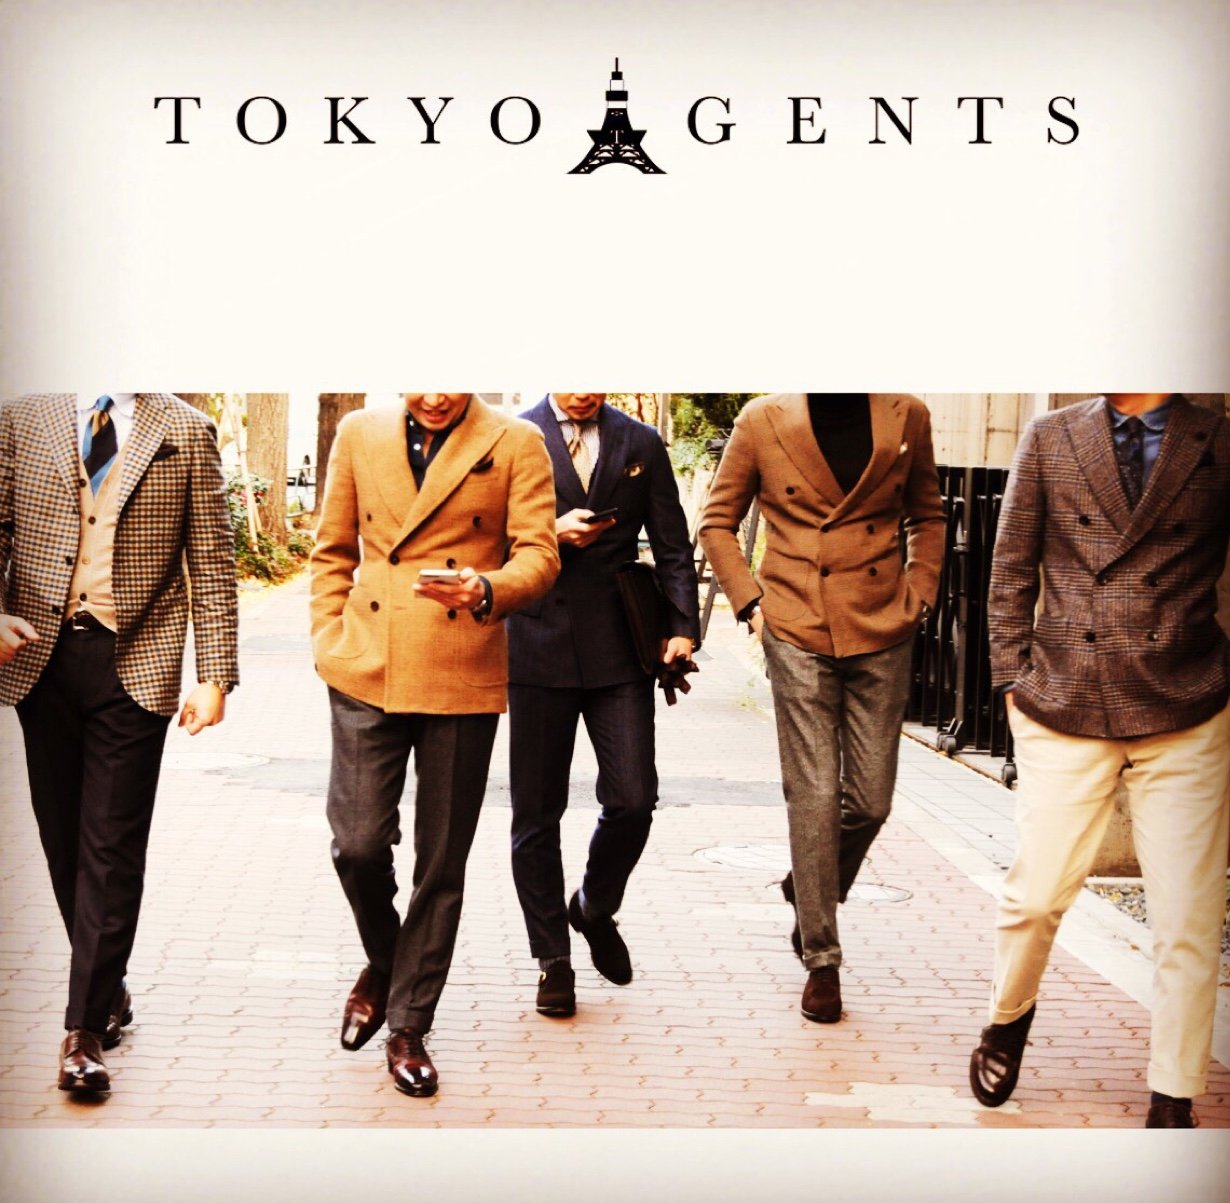 2018年 1月1日 TOKYO GENTS始動。 東京のリアル・クロージング・スタイルを素人からの目線で発信していきます！